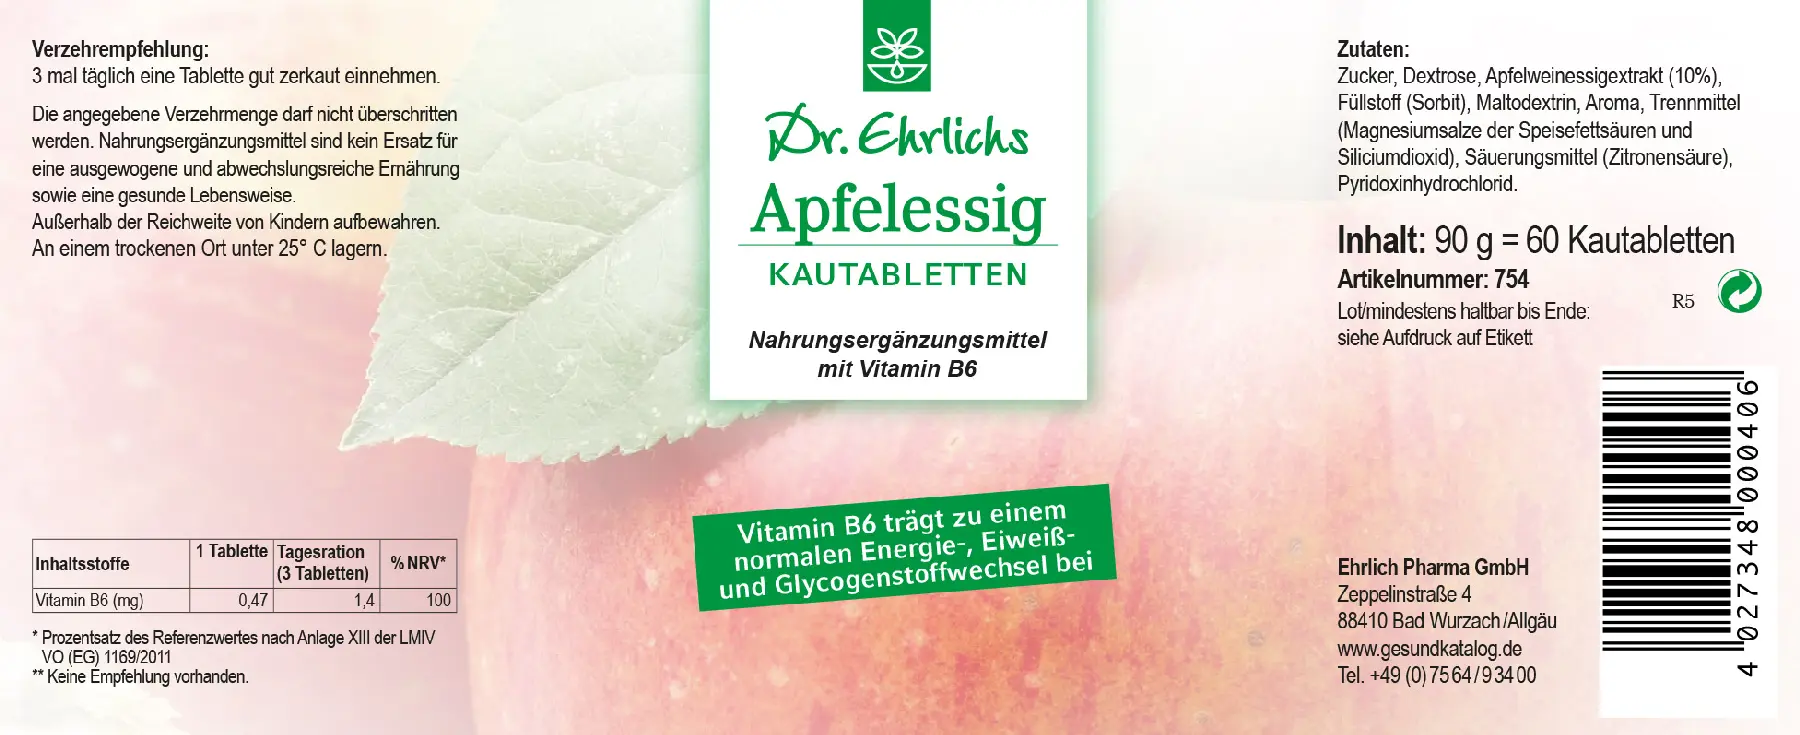 Dr. Ehrlichs Apfelessig Kautabletten - 60 Stück